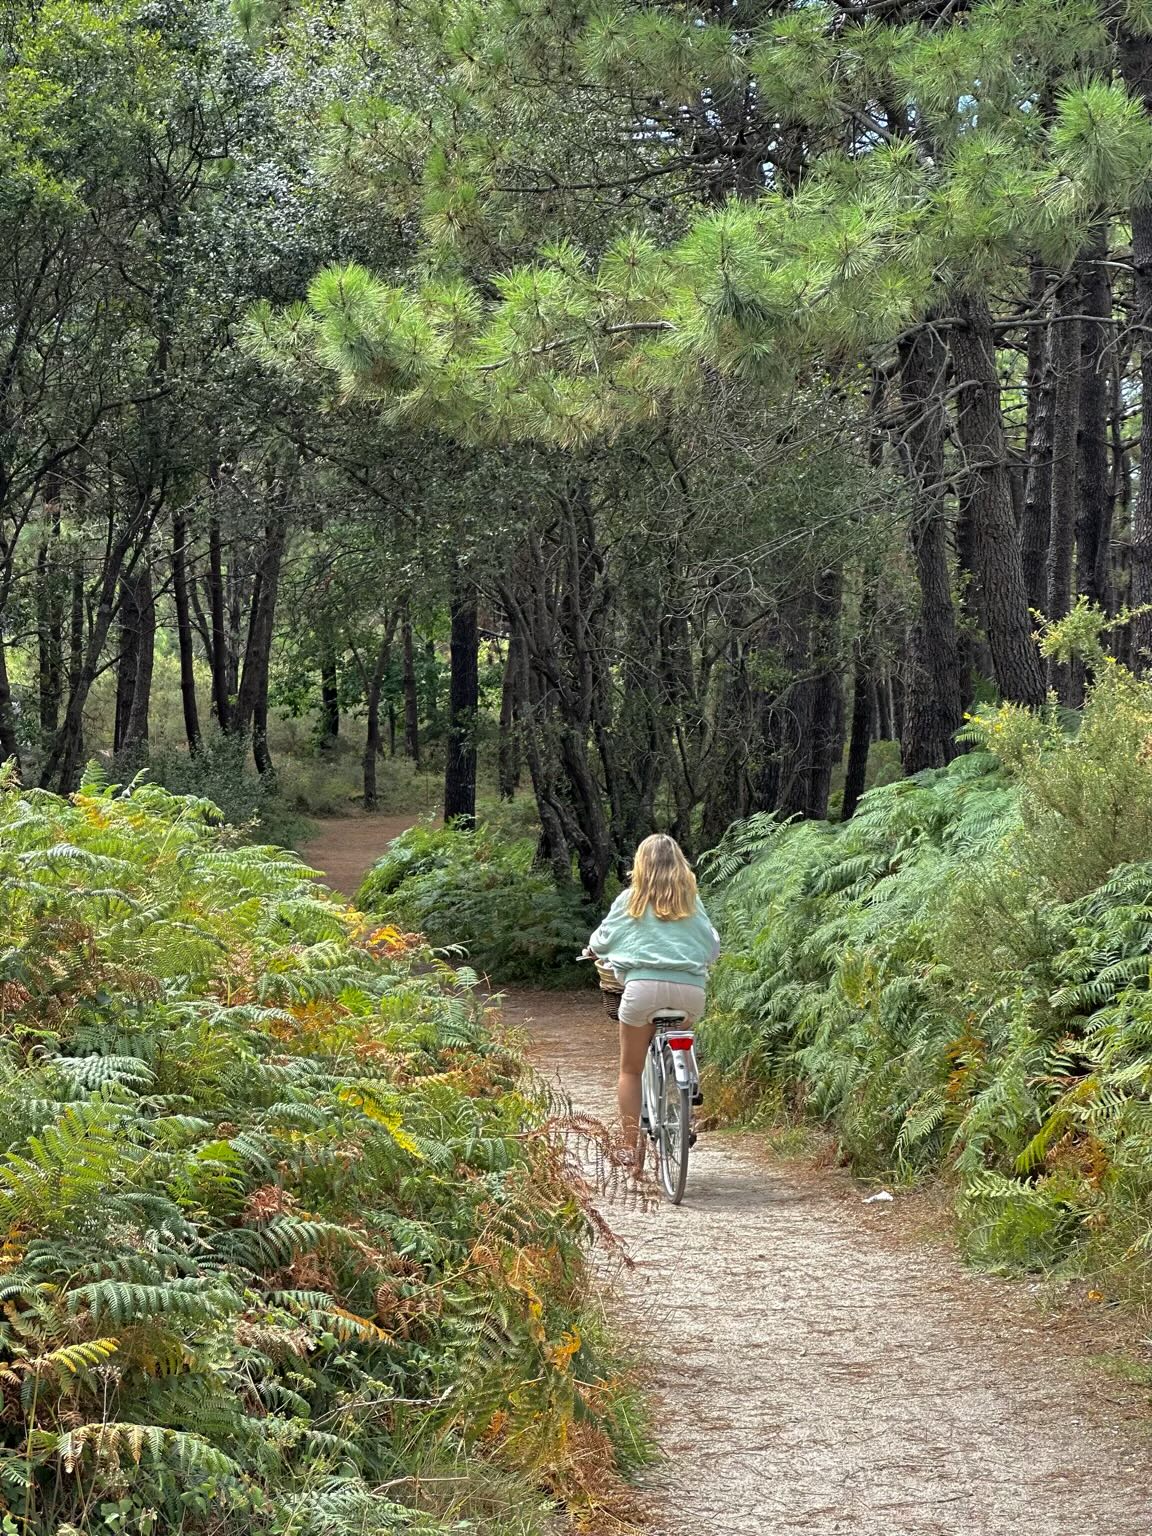 Andrea biking through trees on A Illa de Arousa.